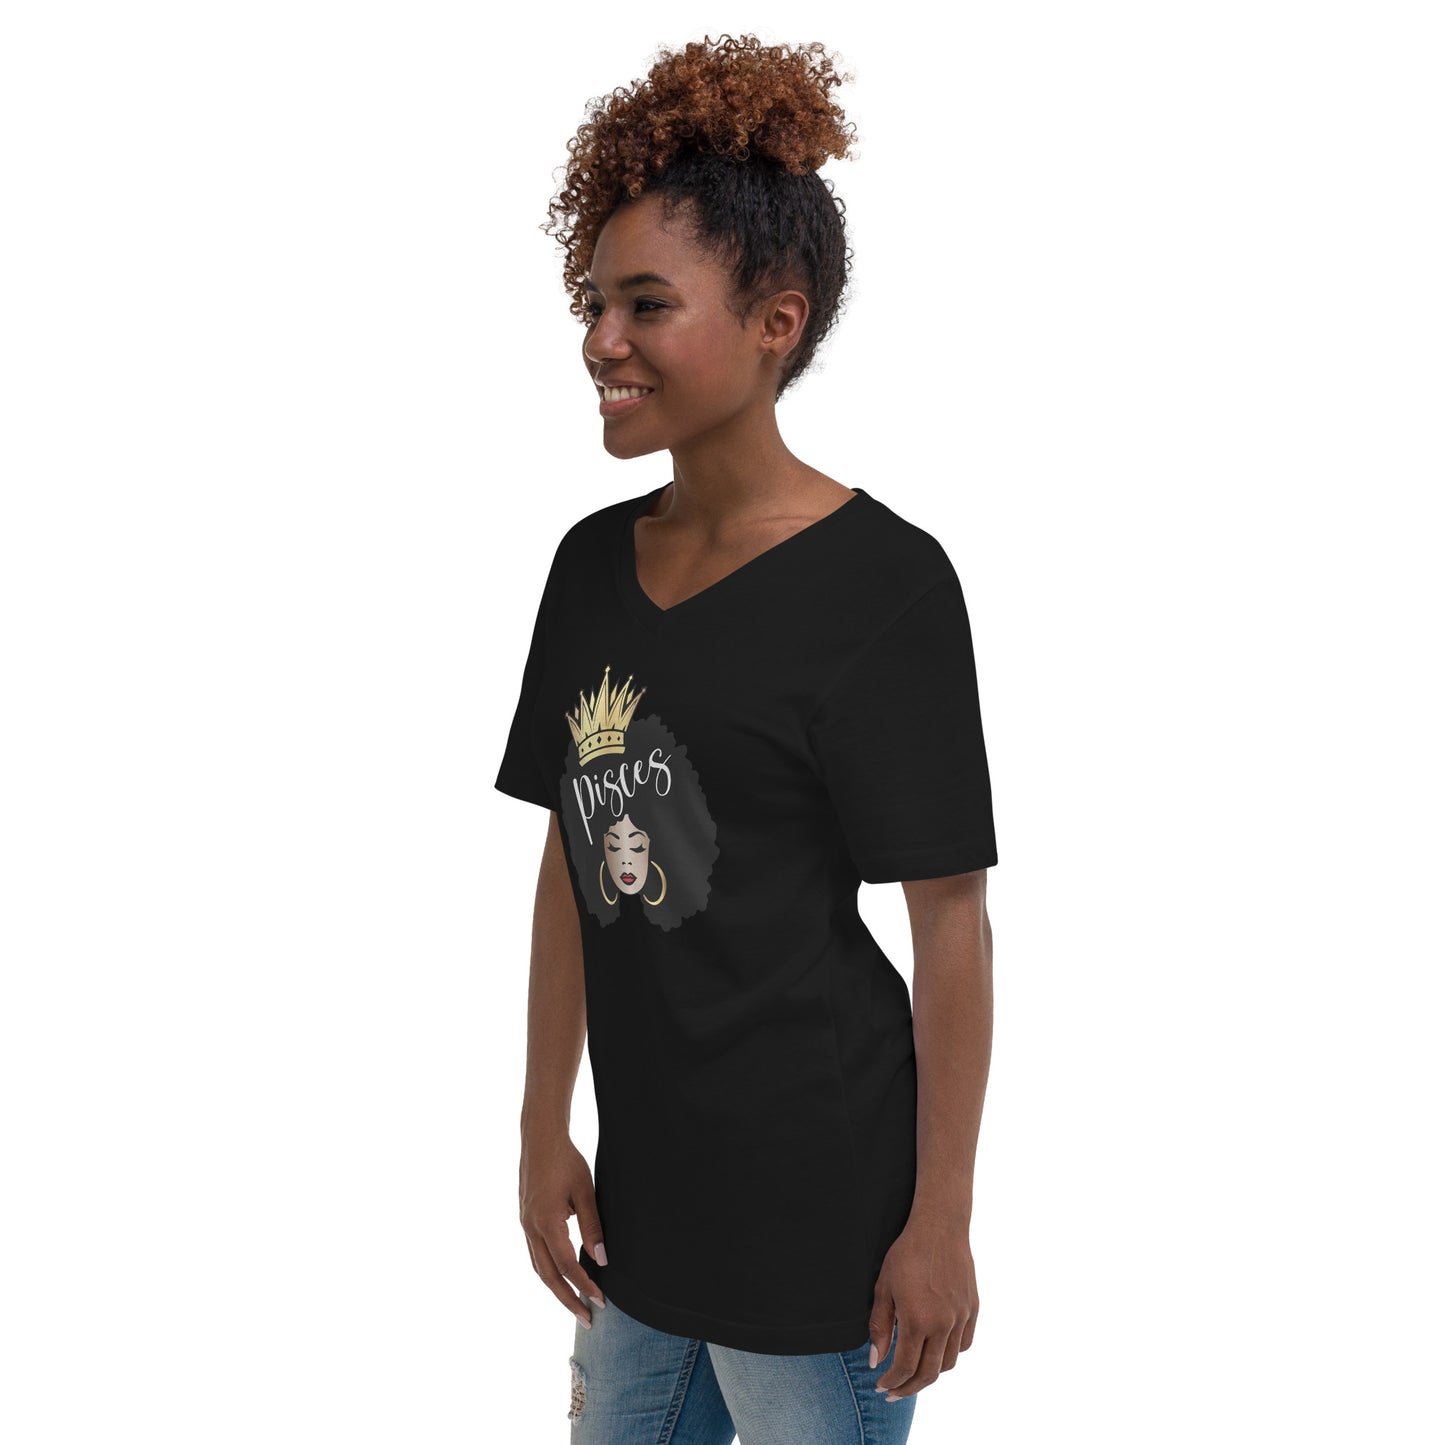 Women's Short Sleeve V-Neck T-Shirt - Pisces Afro Queen